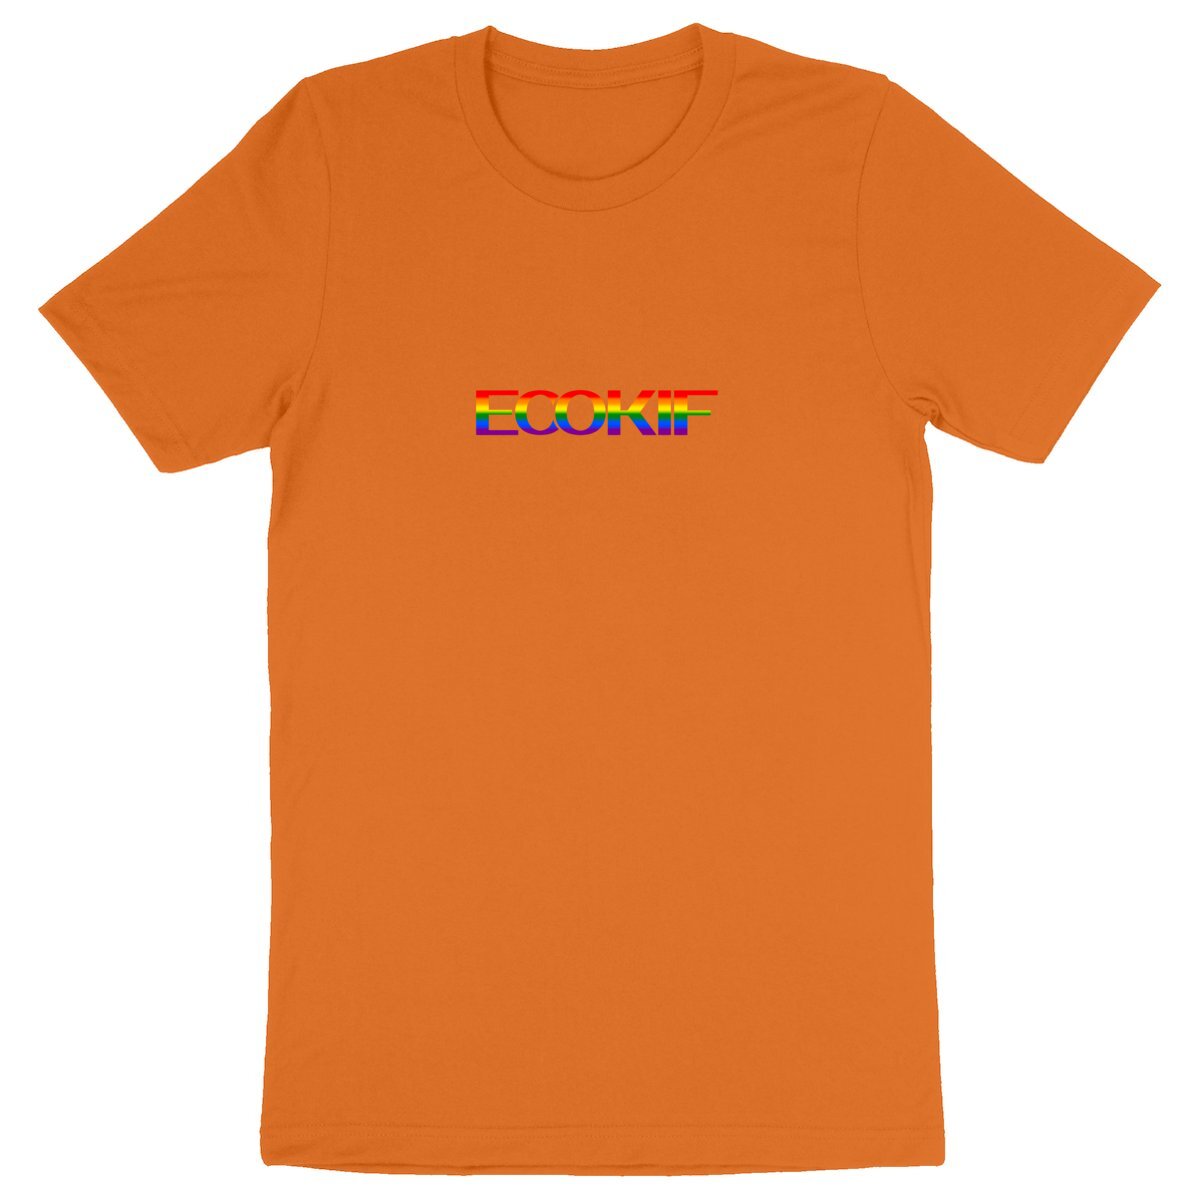 T-Shirt Unisexe Ecokif Pride - Ecokif Basic